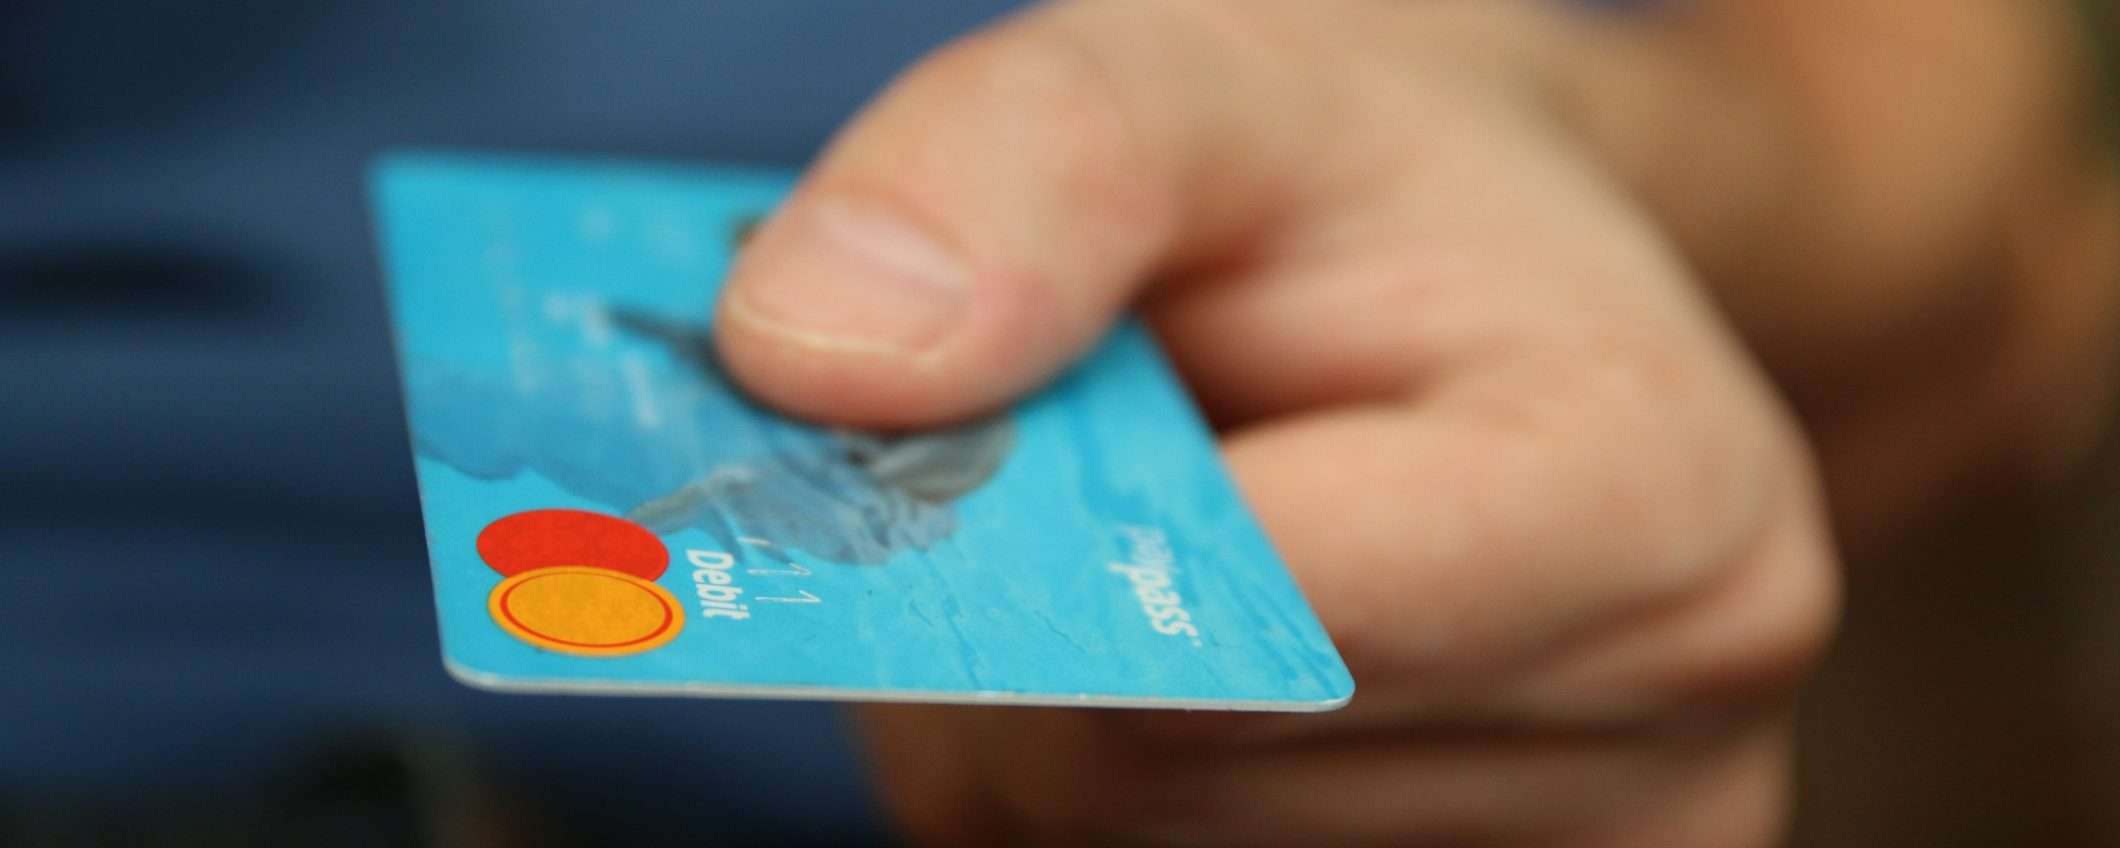 Trova la miglior carta di credito, debito o prepagata